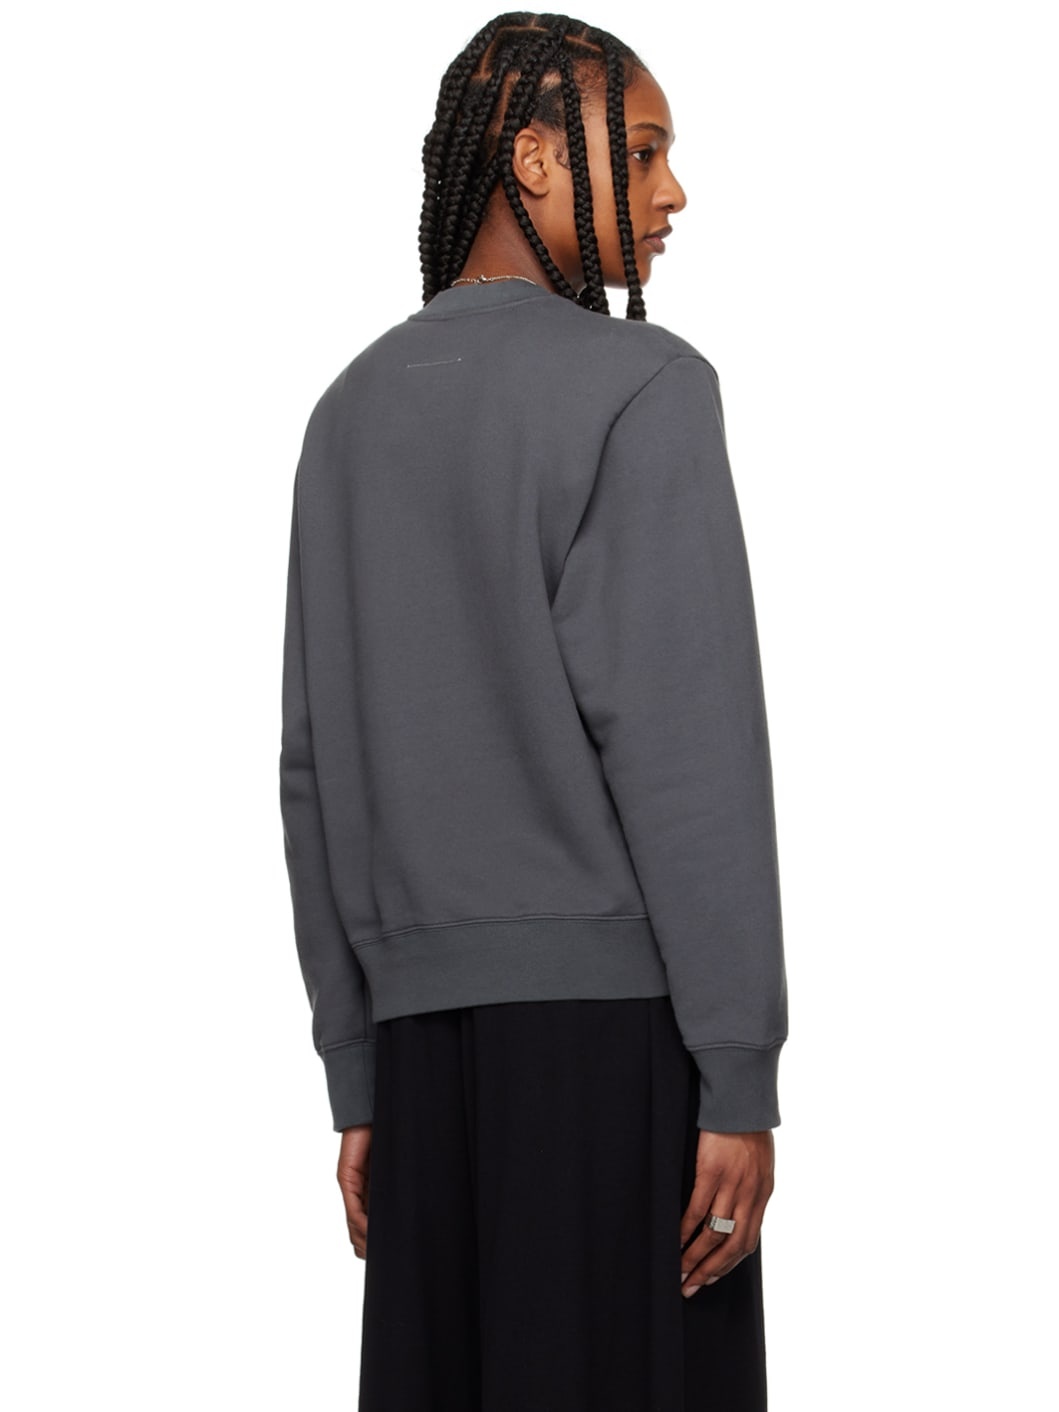 Gray Unbrushed Sweatshirt - 3